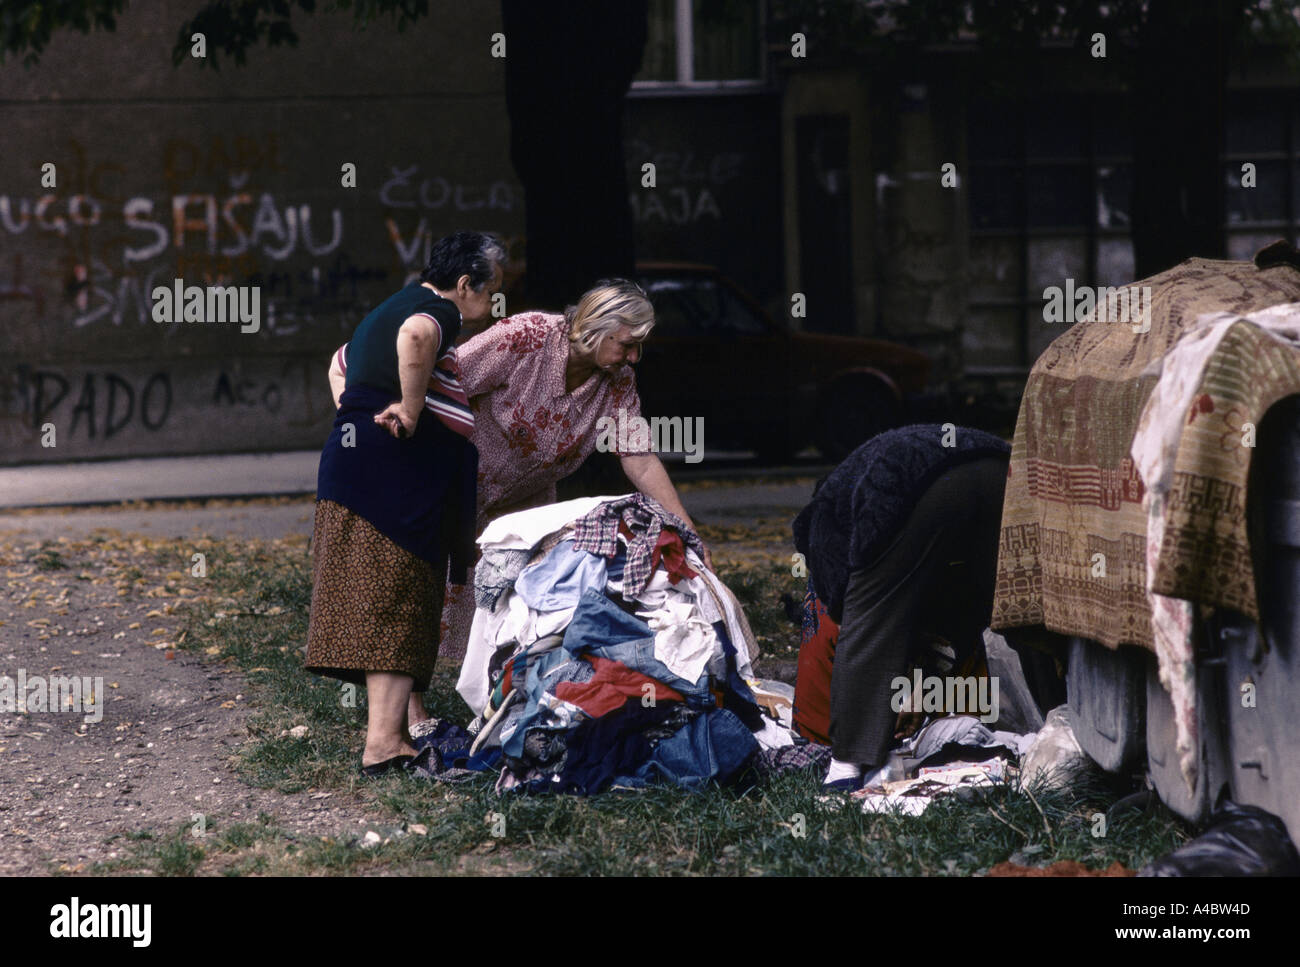 Greivica sous contrôle serbe, Sarjevo : Les gens fouillent les vêtements laissés par les personnes qui ont déjà fui, Sept 1992 Banque D'Images